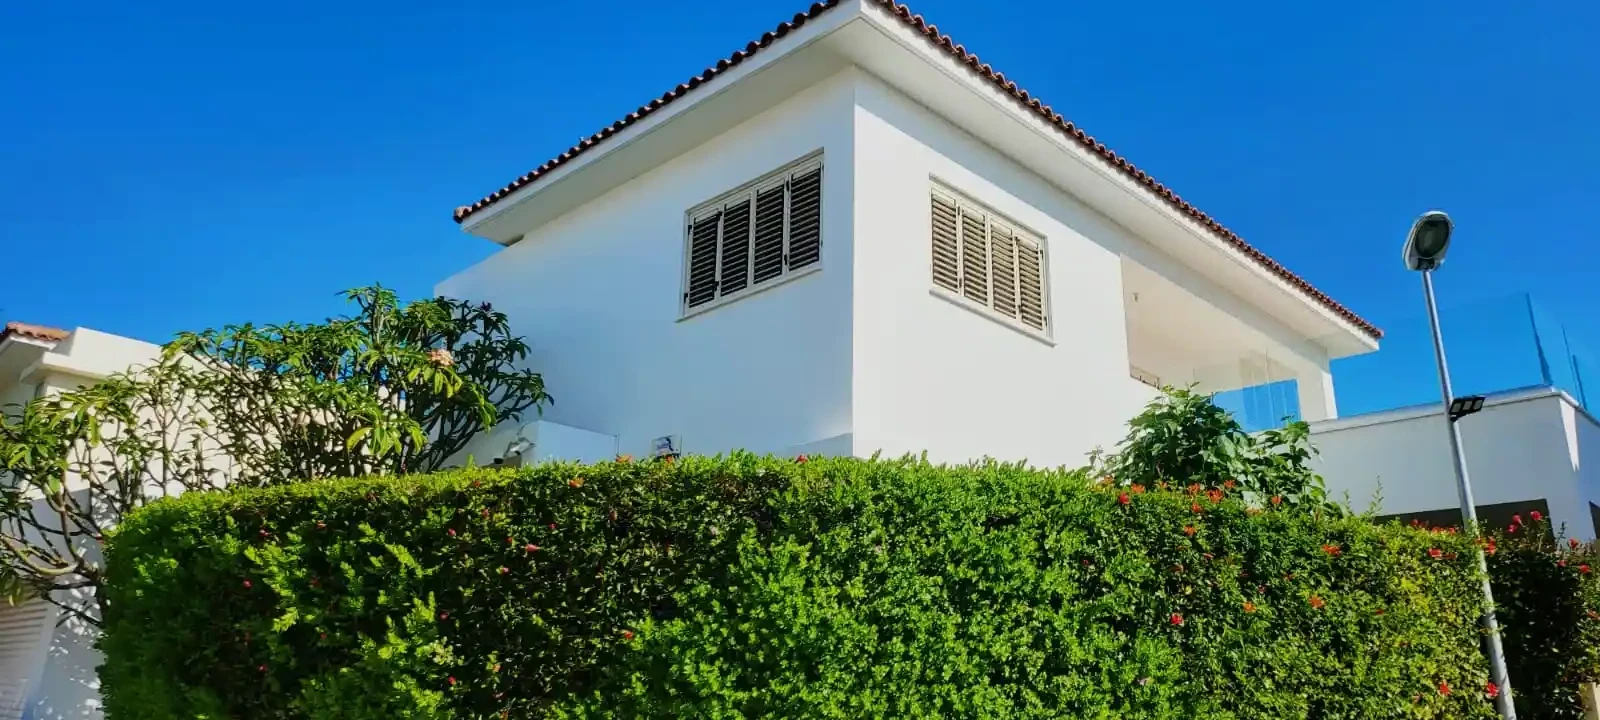 3-bedroom villa to rent €3.400, image 1